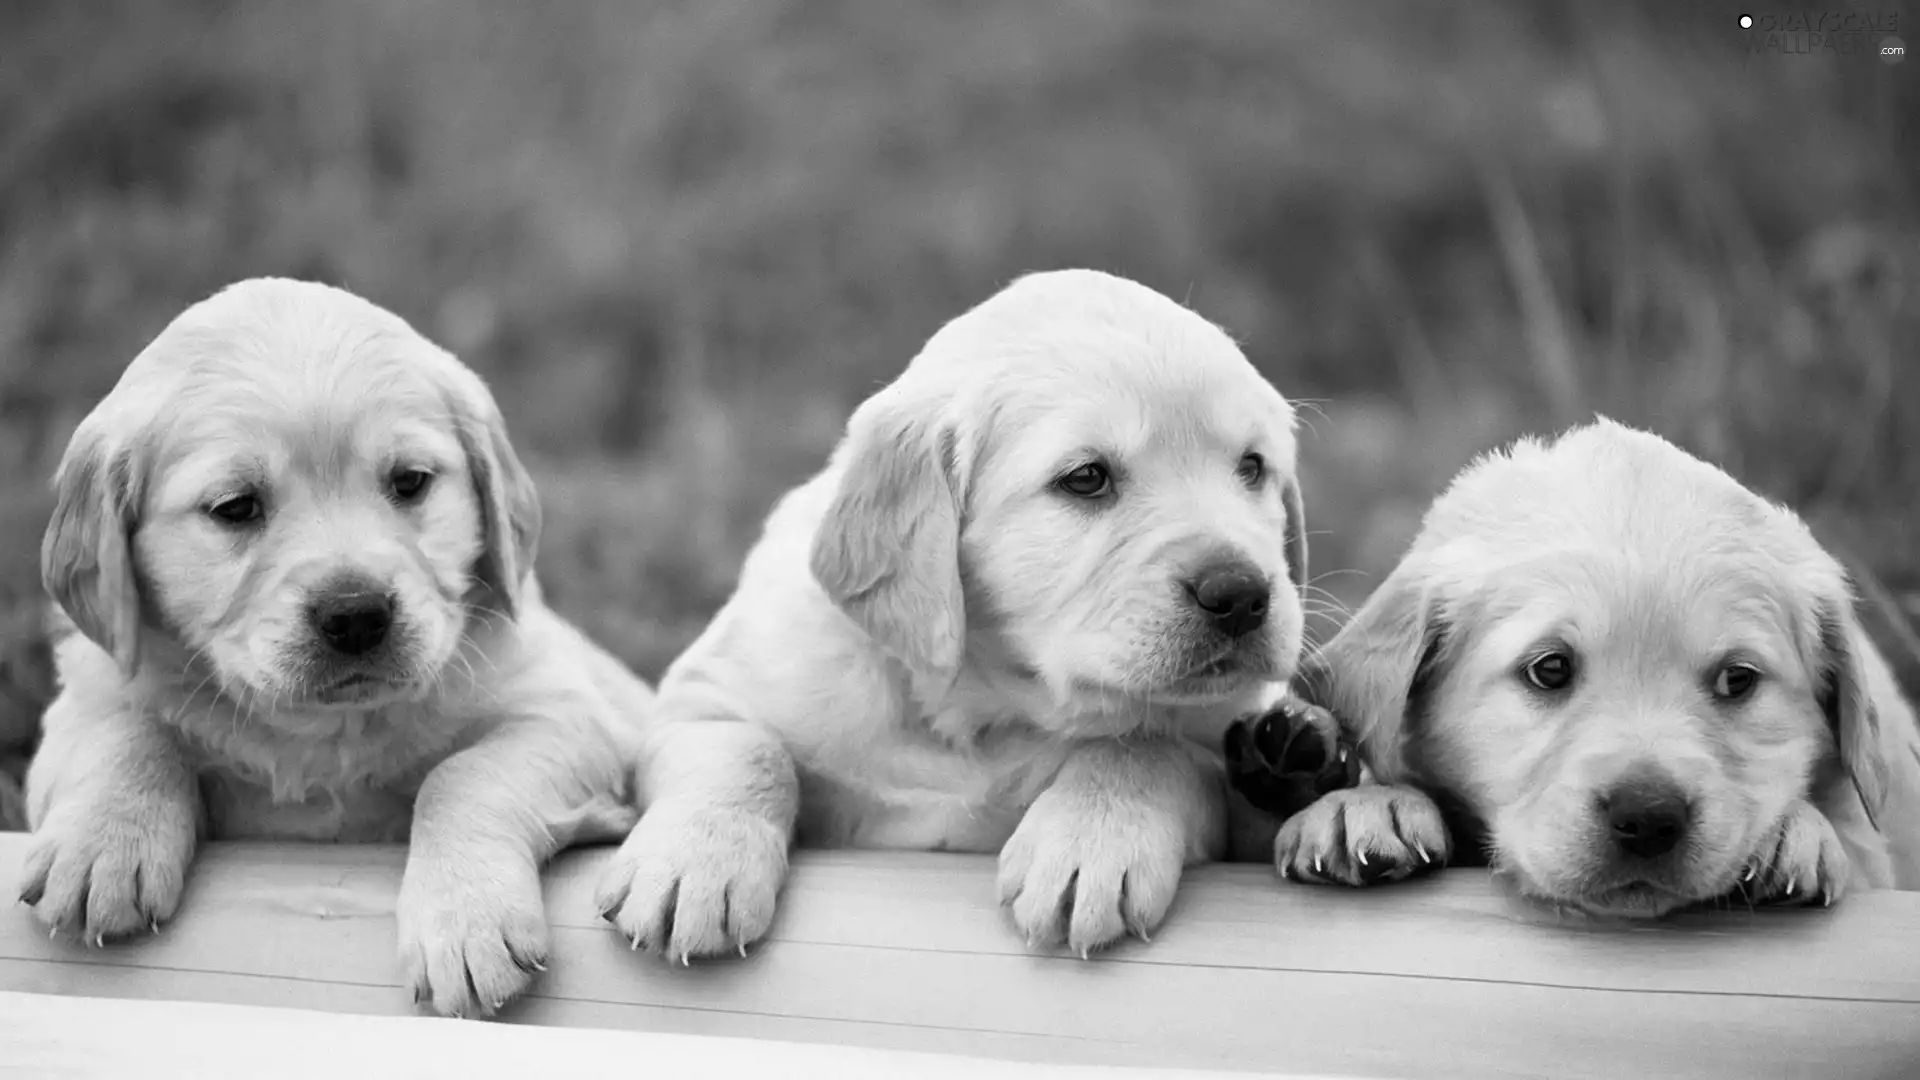 Three, puppies